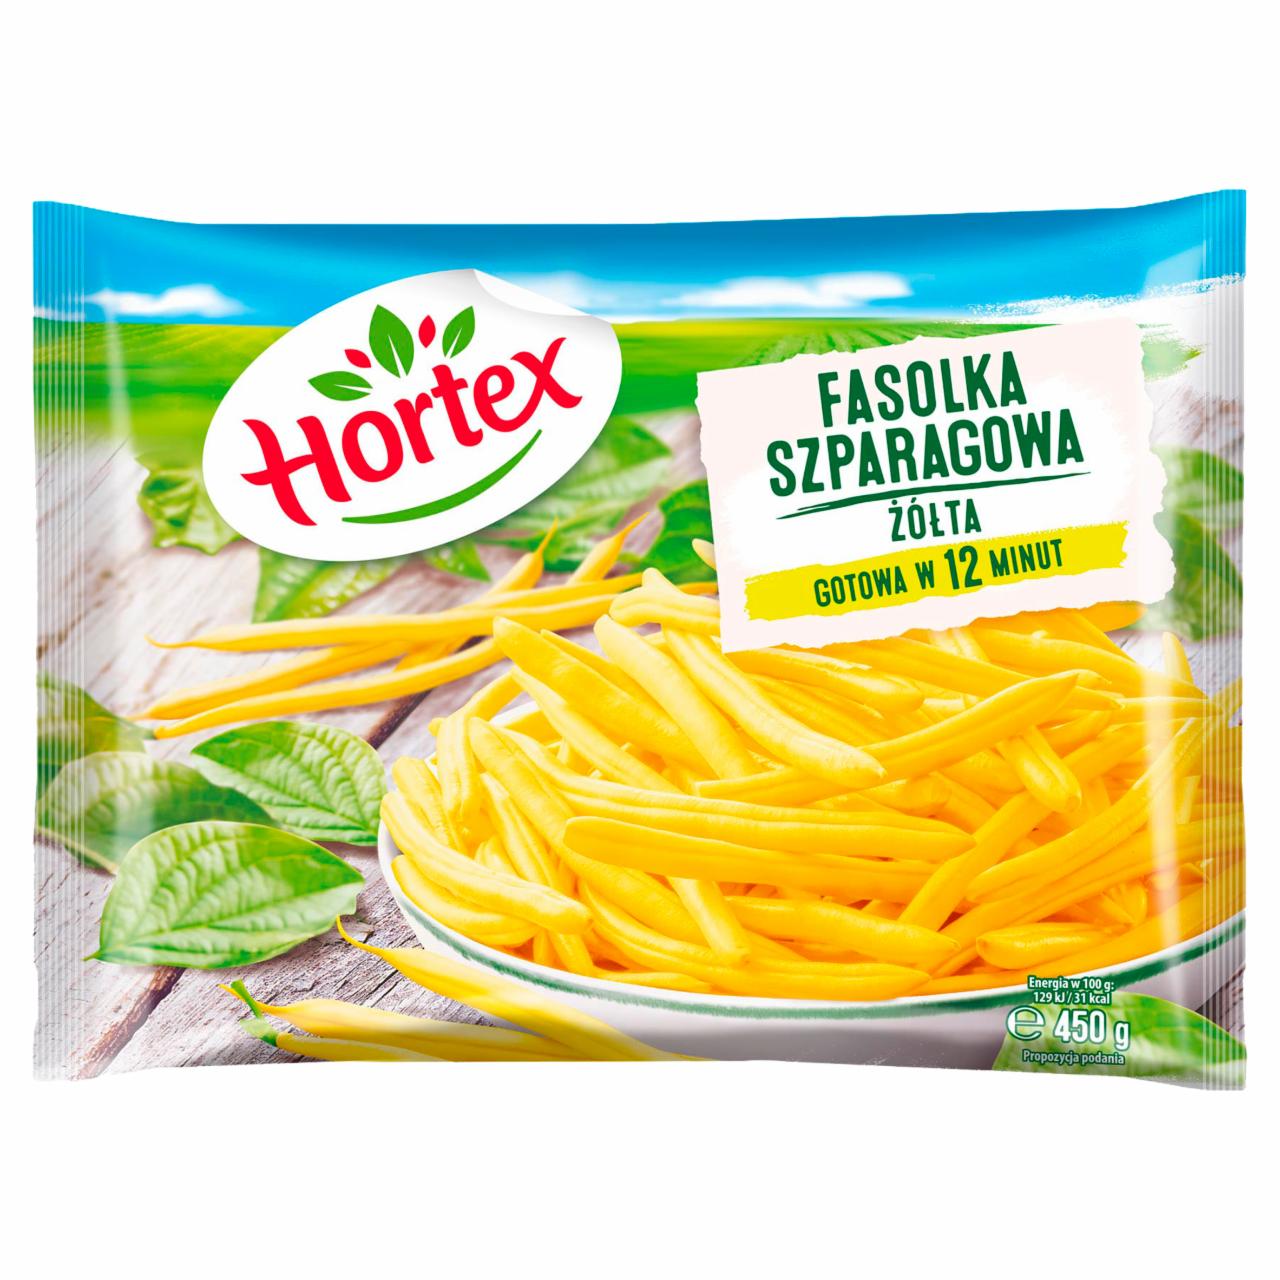 Zdjęcia - Hortex Fasolka szparagowa żółta 450 g 